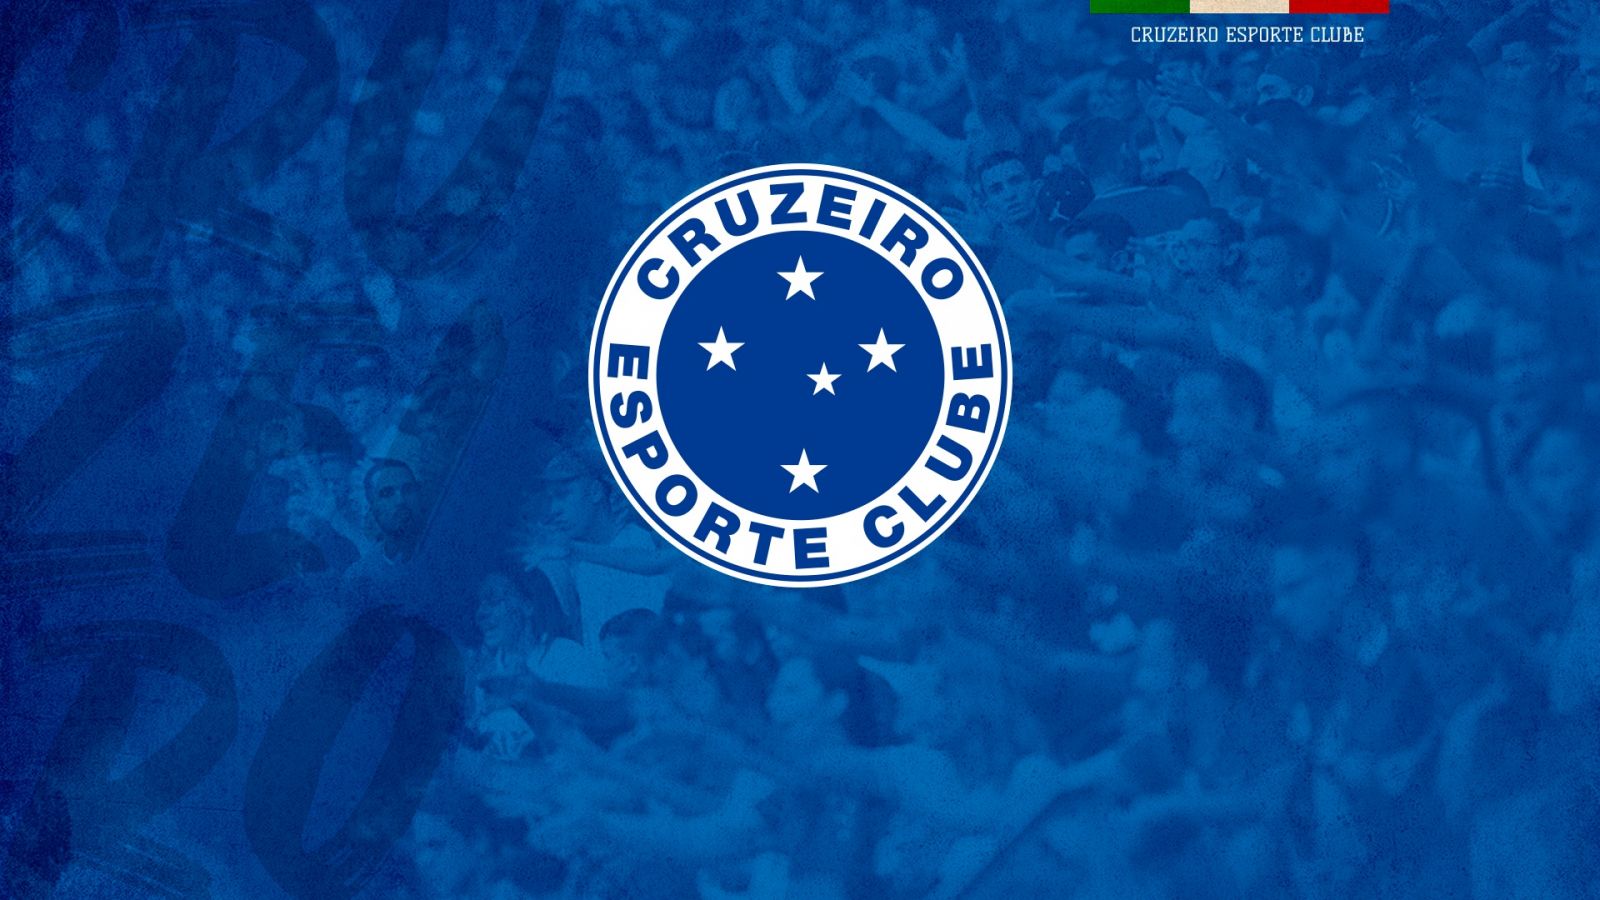 Conheça os próximos passos da fase de transição no Cruzeiro